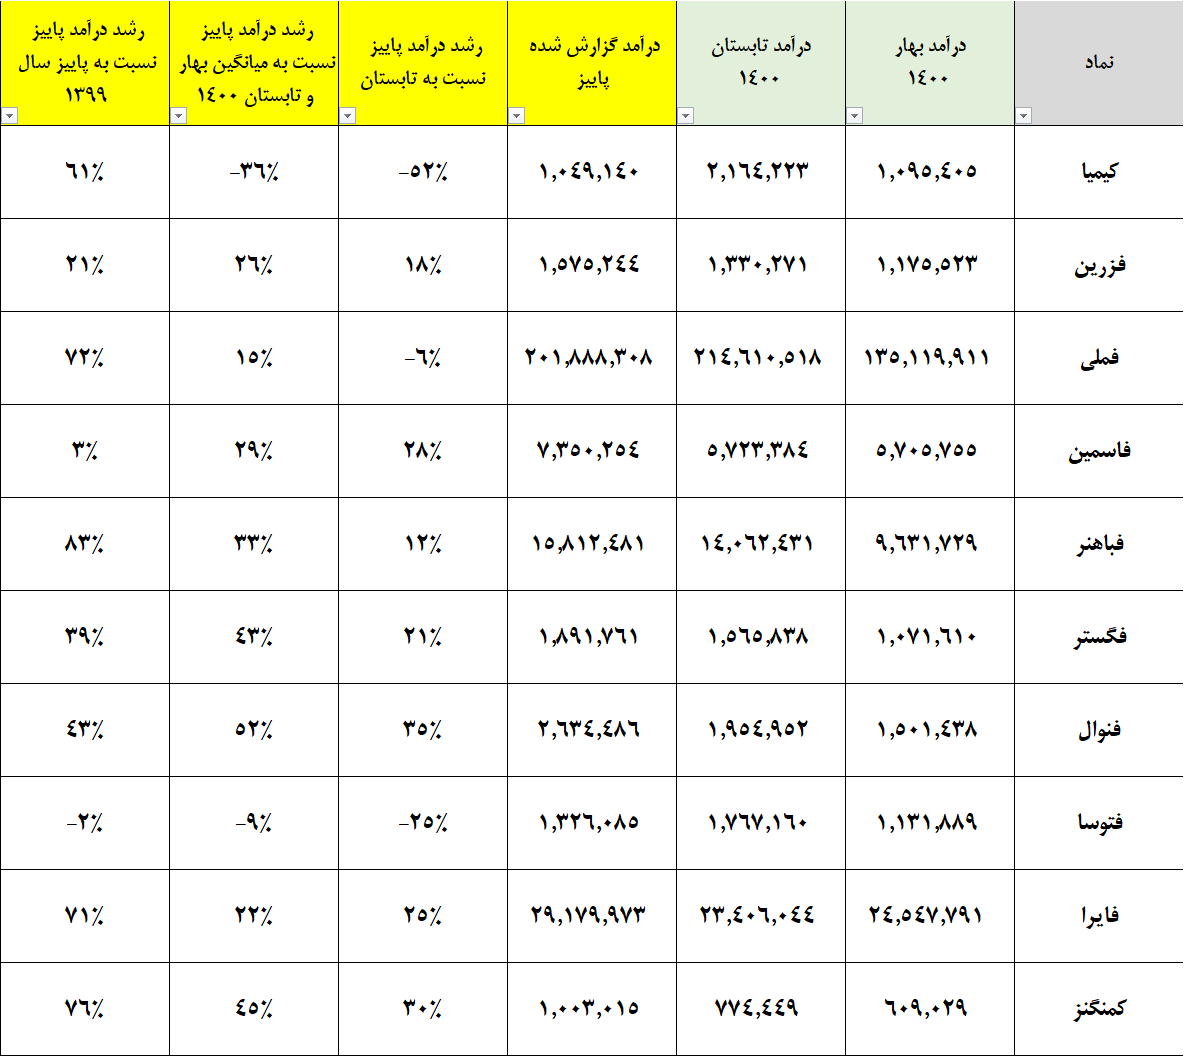 تحلیل گروه فلزات گرانبها و فلزات غیر آهنی بورس تهران